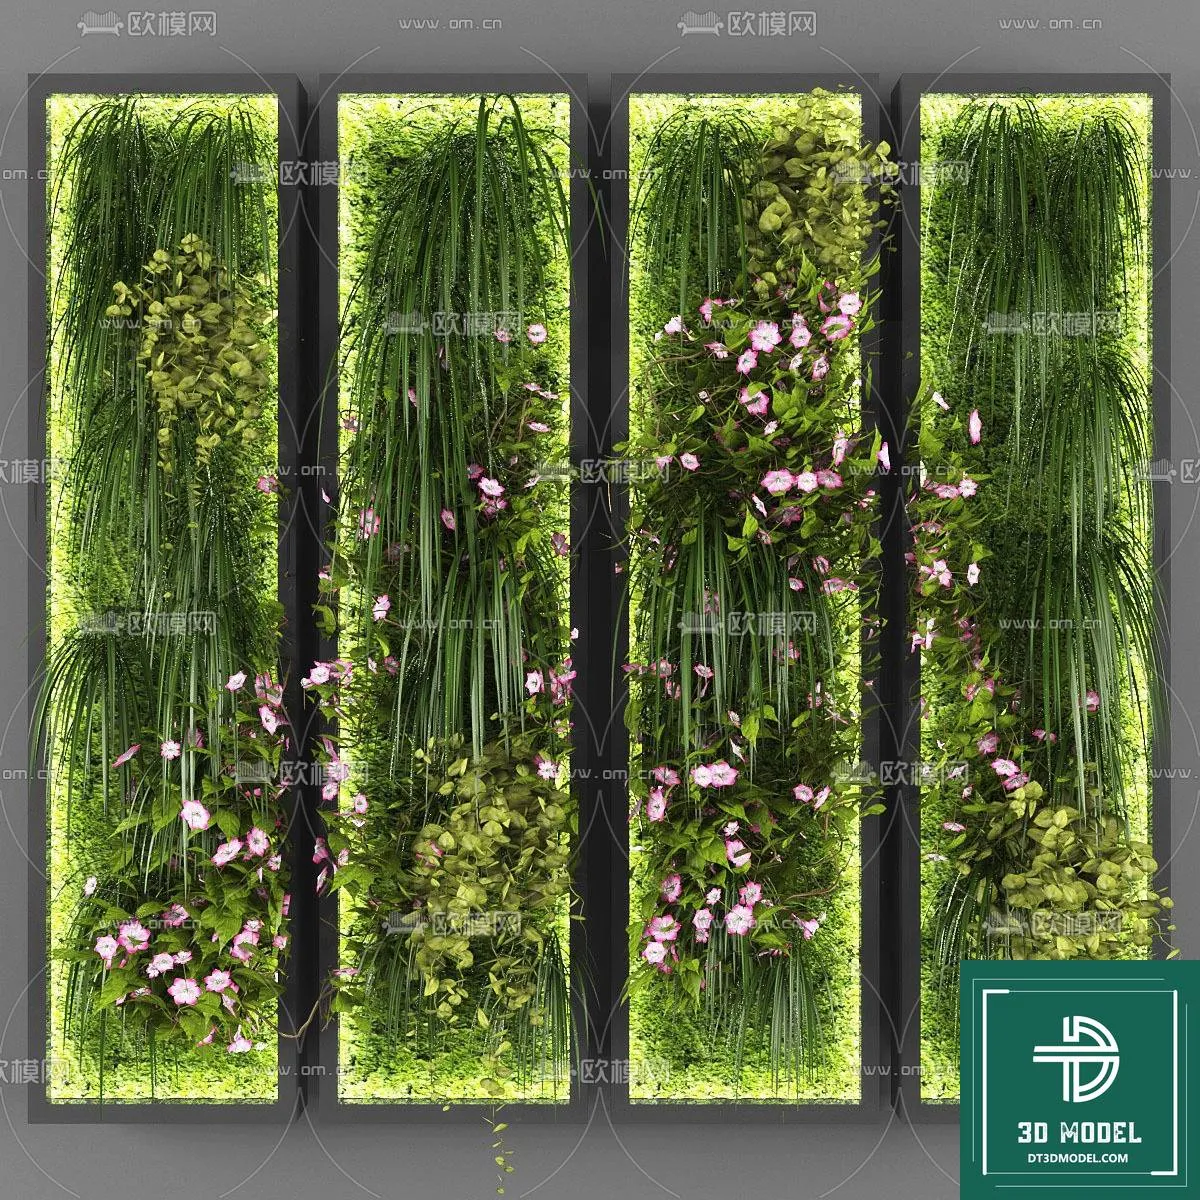 VERTICAL GARDEN – FITOWALL PLANT 3D MODEL – 014